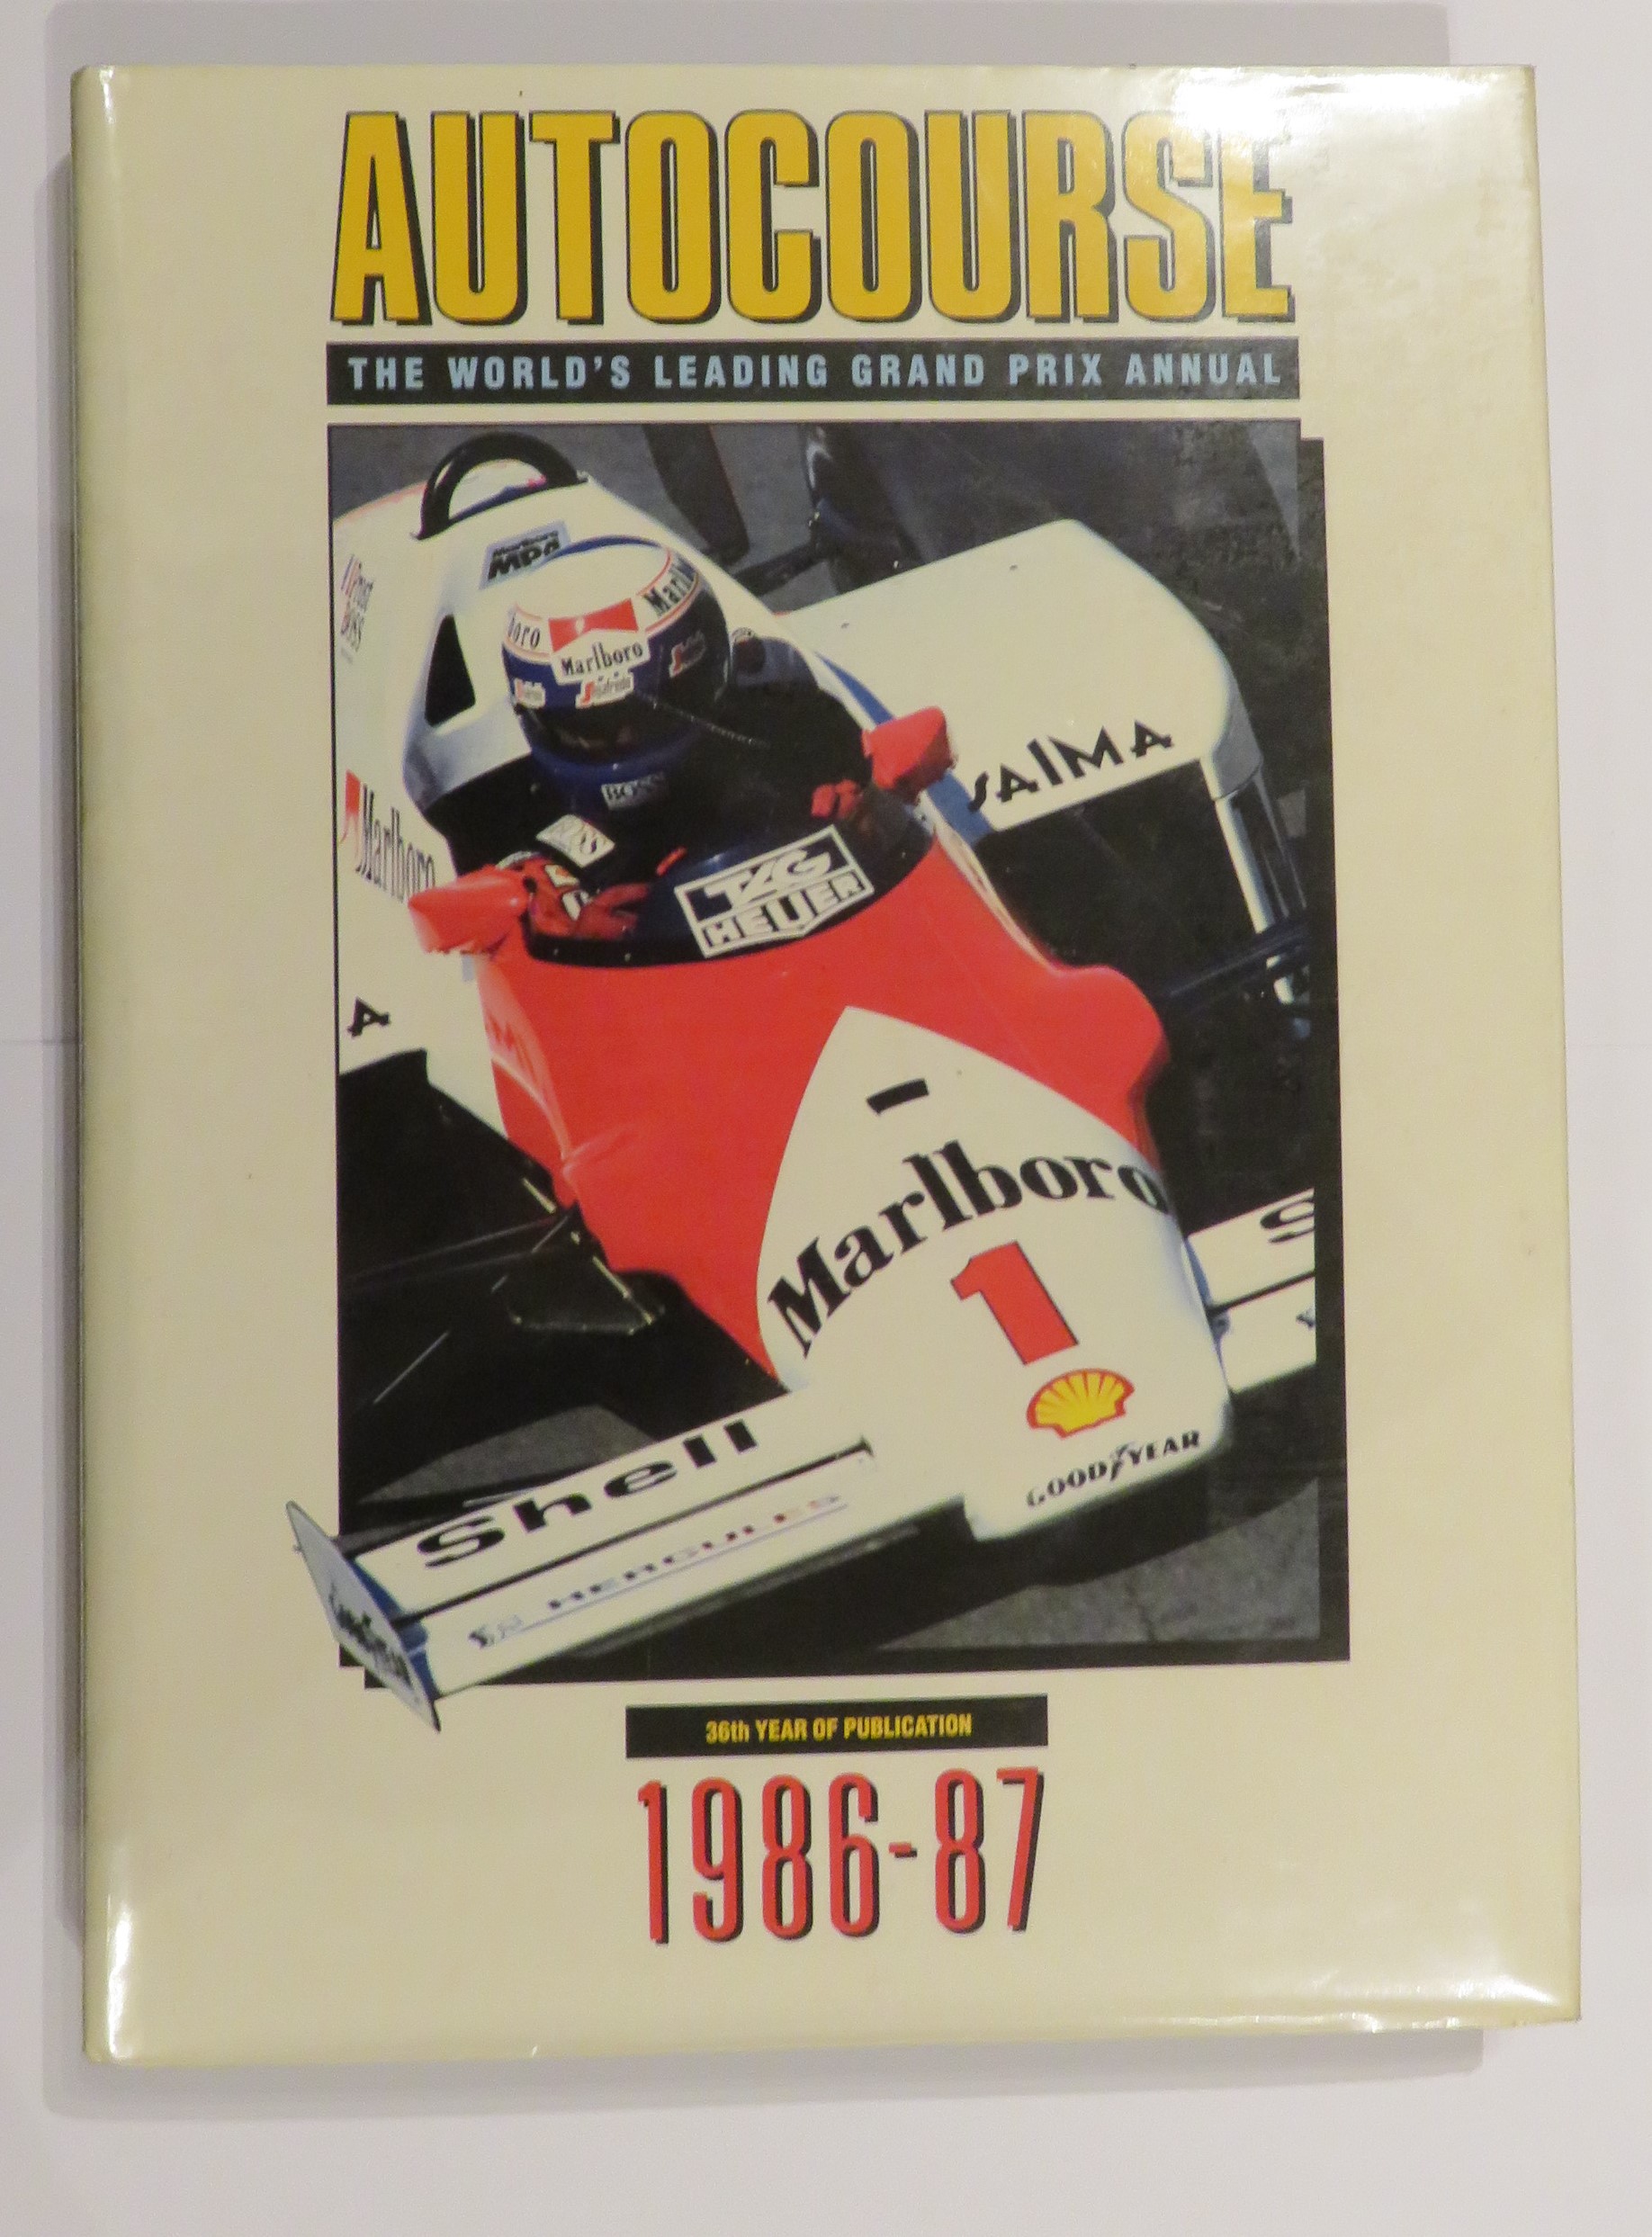 Autocourse: The World's Leading Grand Prix Annual 1986-87